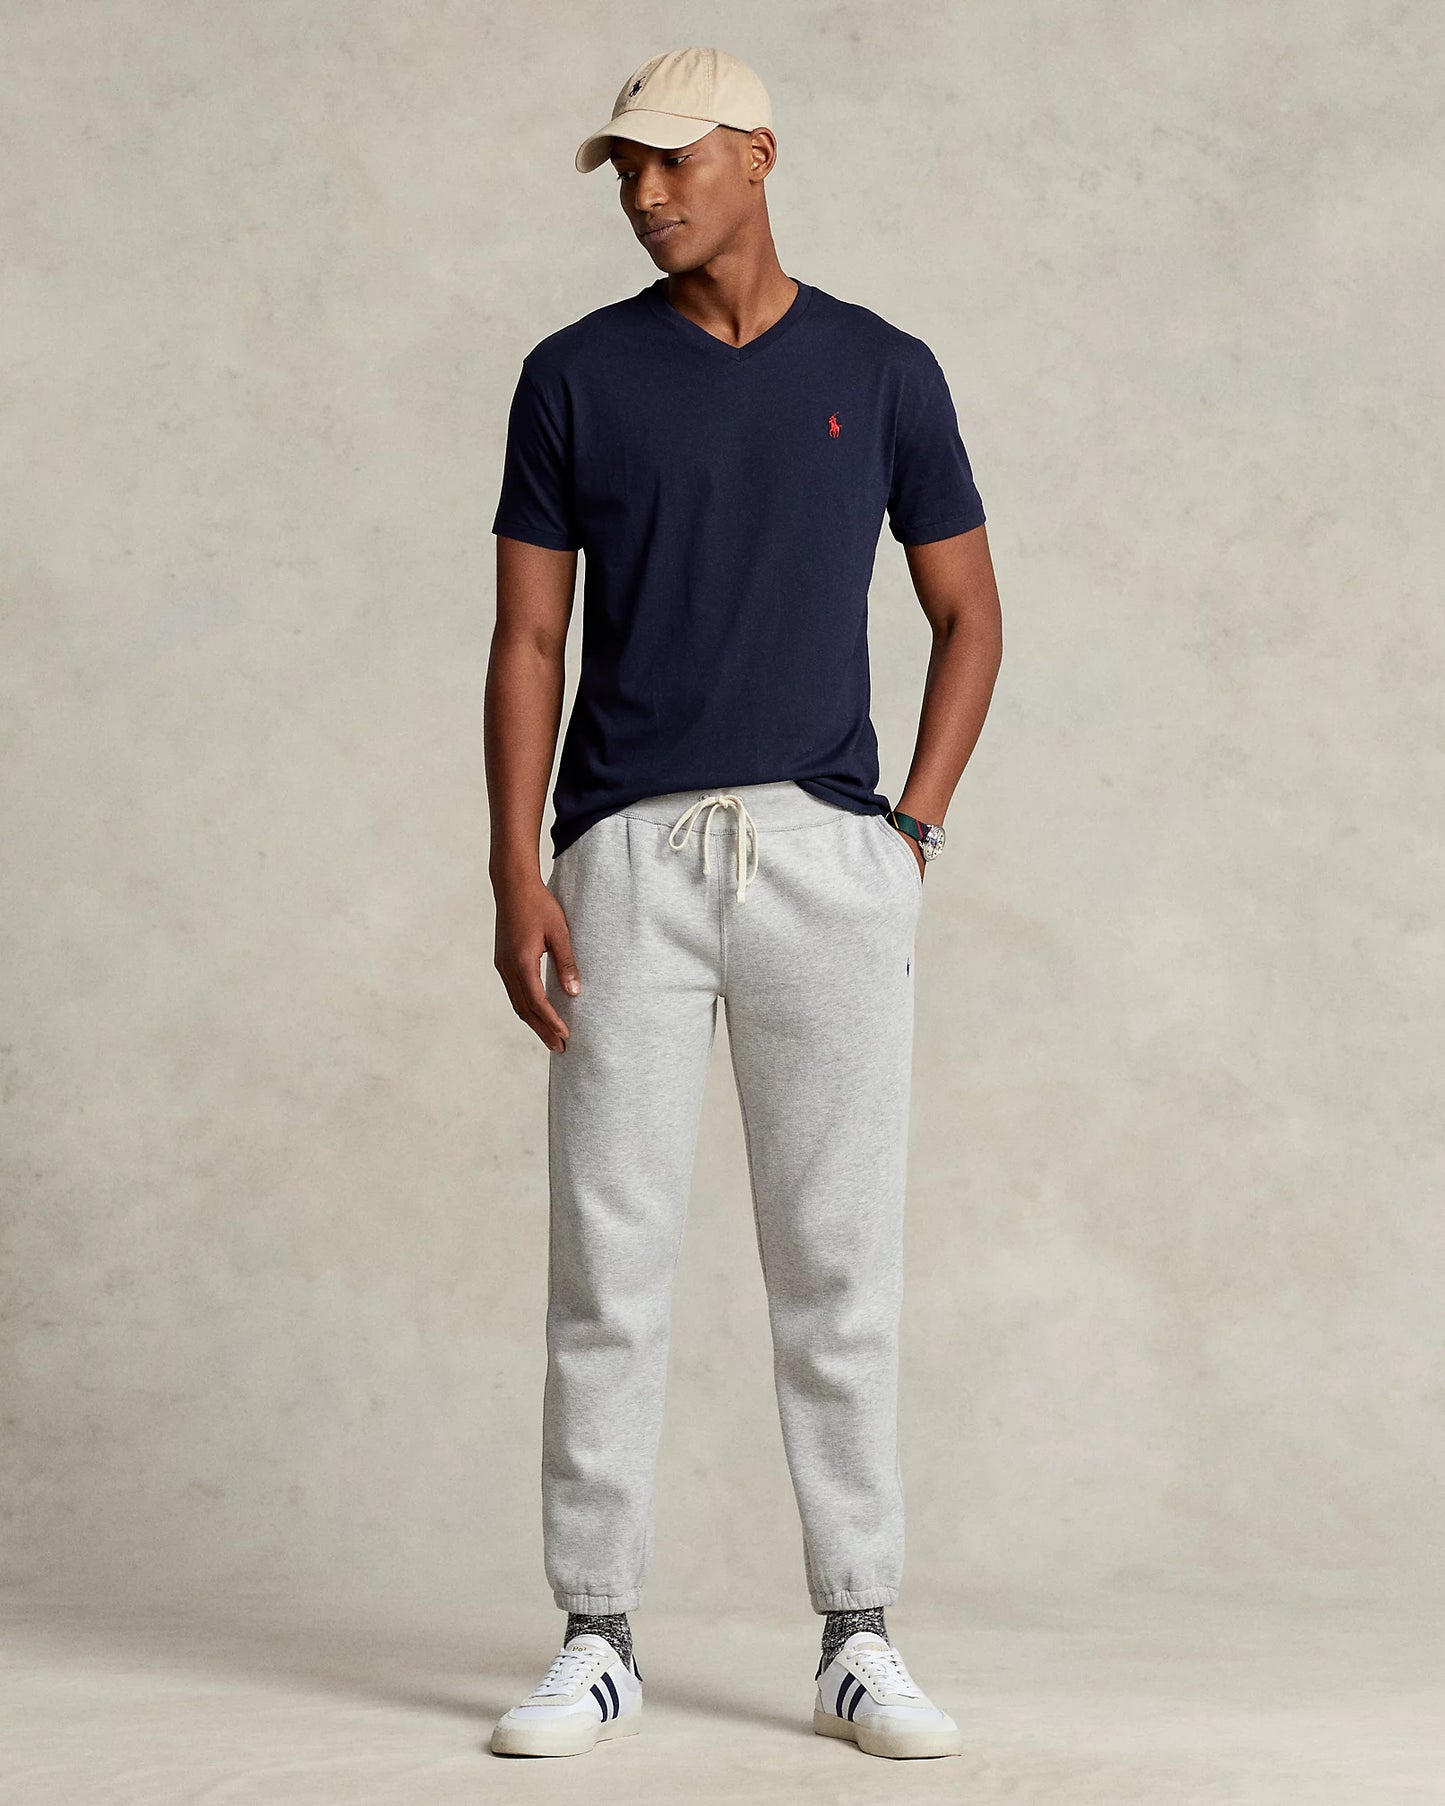 Polo Ralph Lauren Men's Classic-Fit Cotton V-Neck T-Shirt  Color Ink Blue Size L